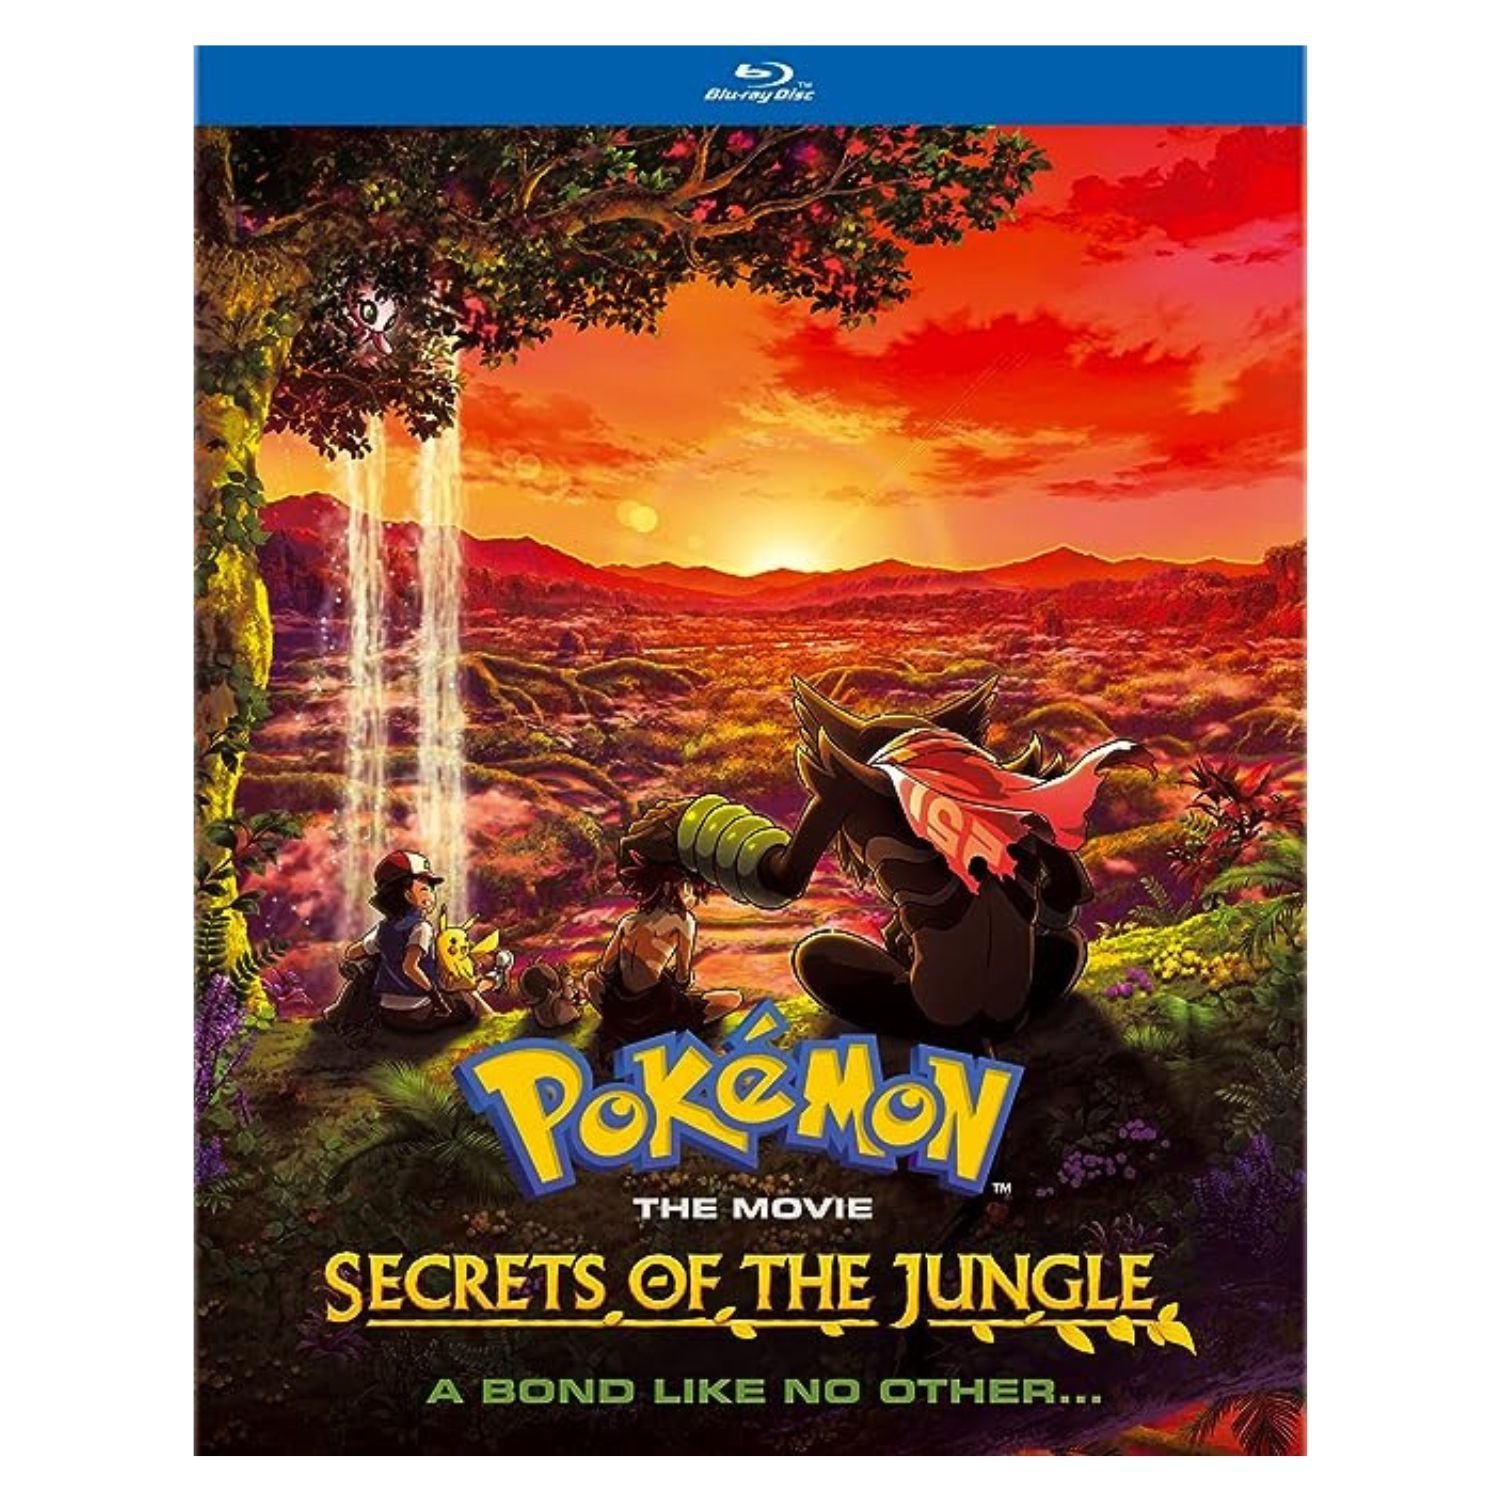 Pokemon Diamond & Pearl Movie 4-Pack [Blu-ray]